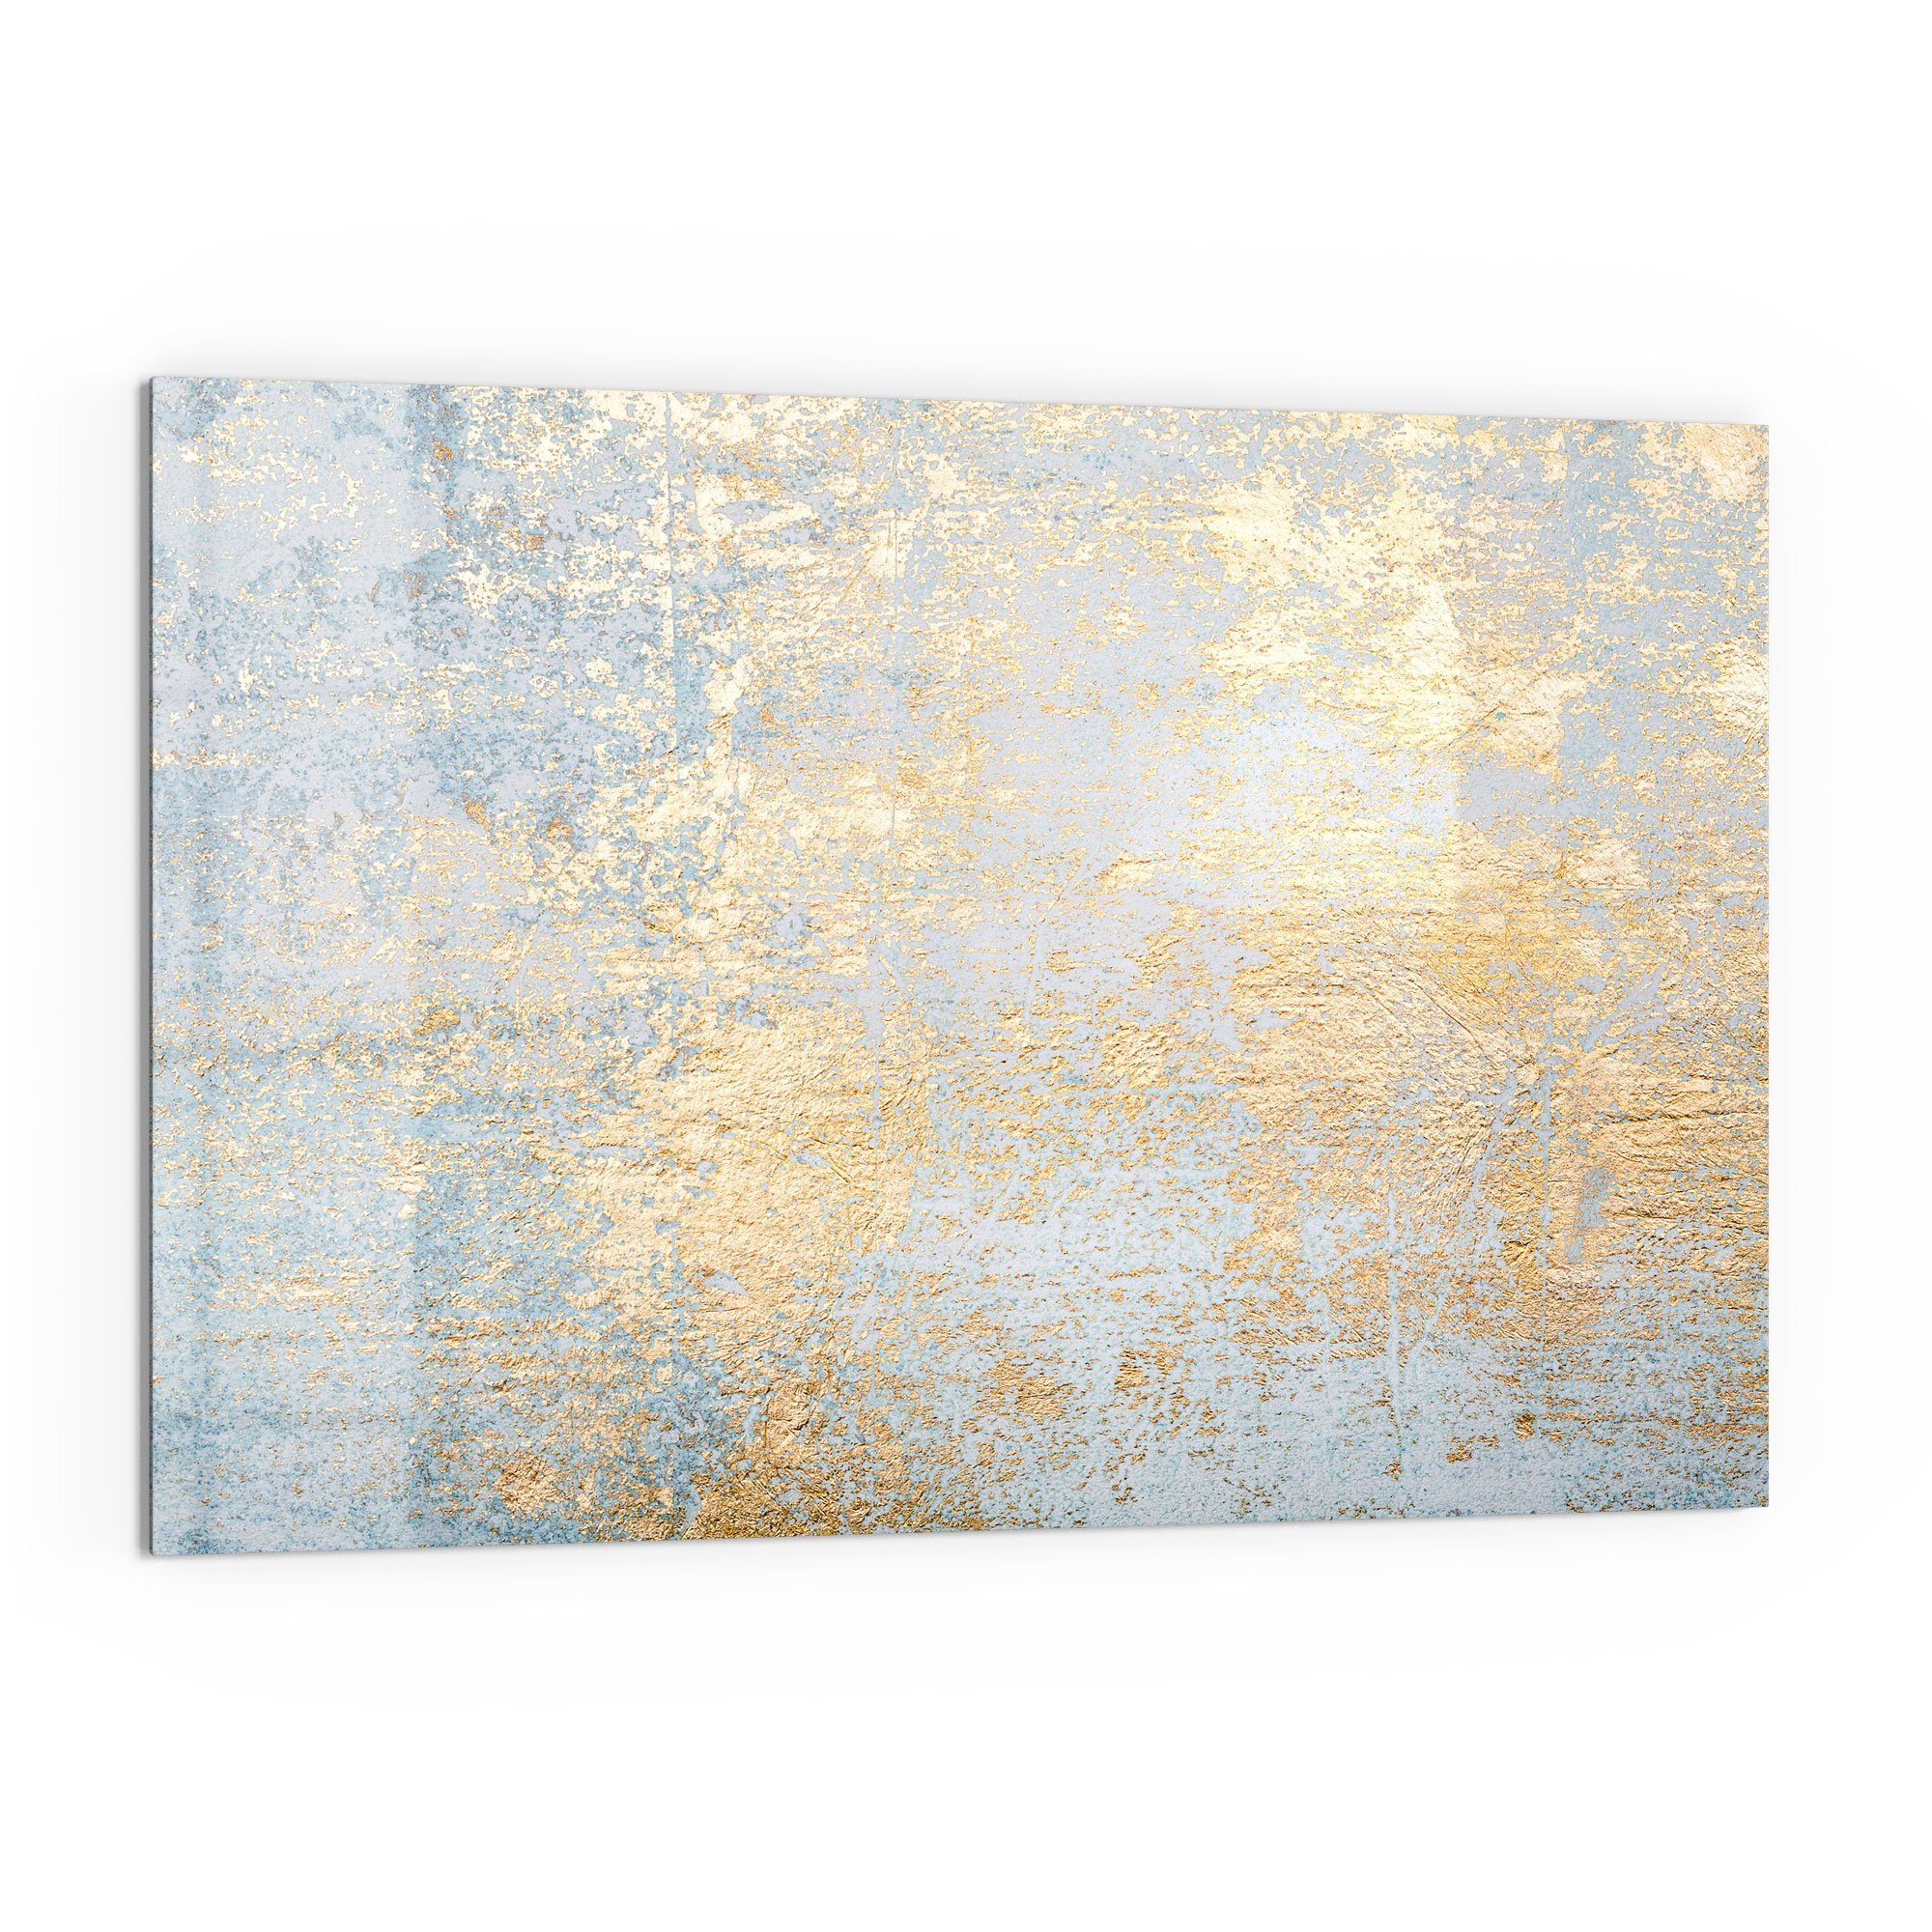 Herdblende mit Küchenrückwand Glas Badrückwand Gold-Struktur', 'Wand Spritzschutz DEQORI